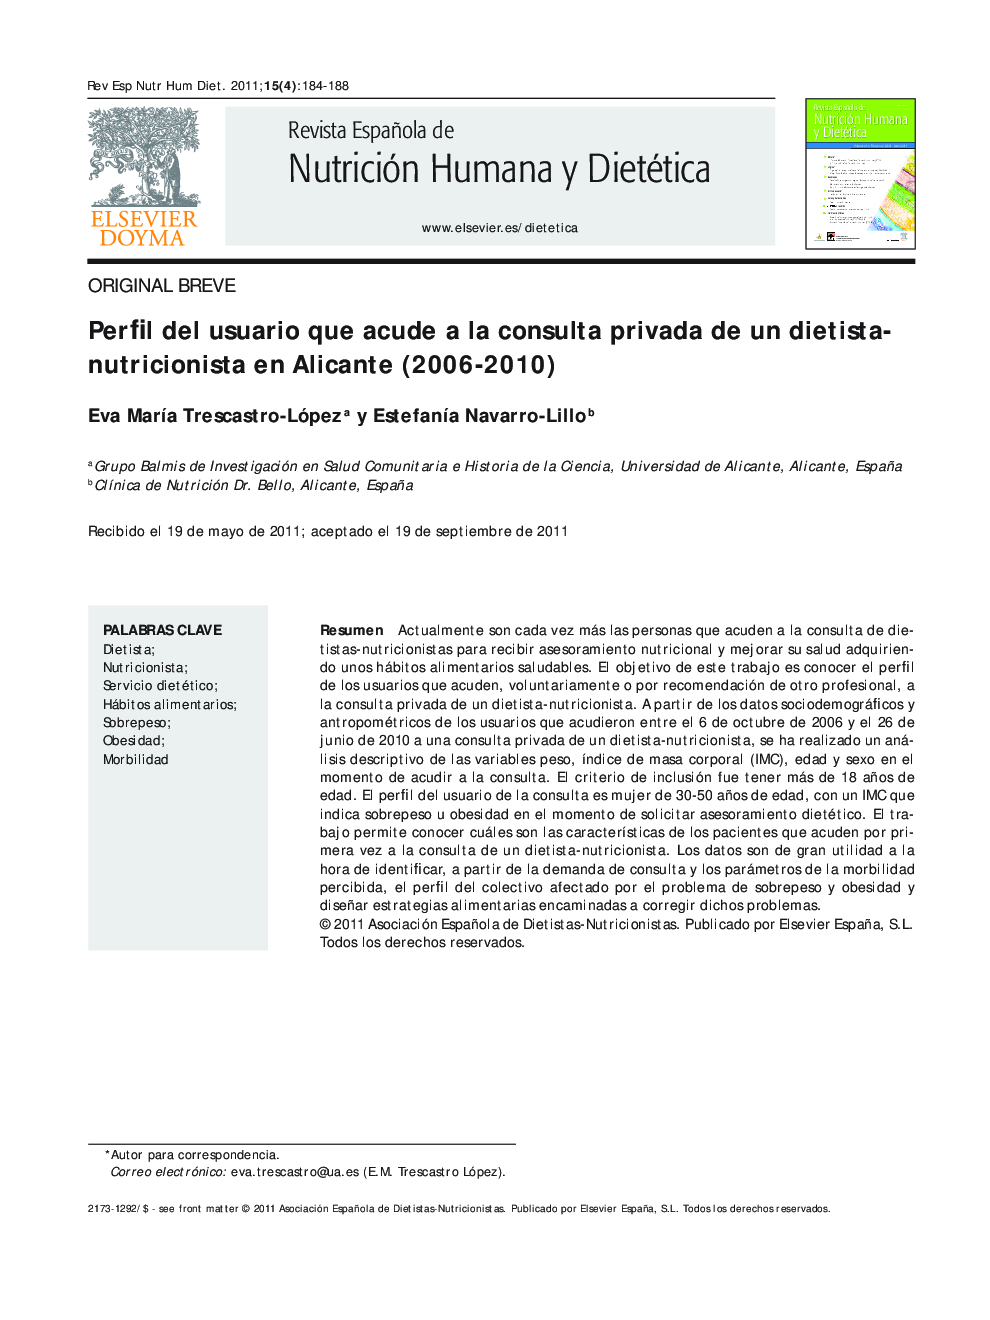 Perfil del usuario que acude a la consulta privada de un dietista-nutricionista en Alicante (2006-2010)